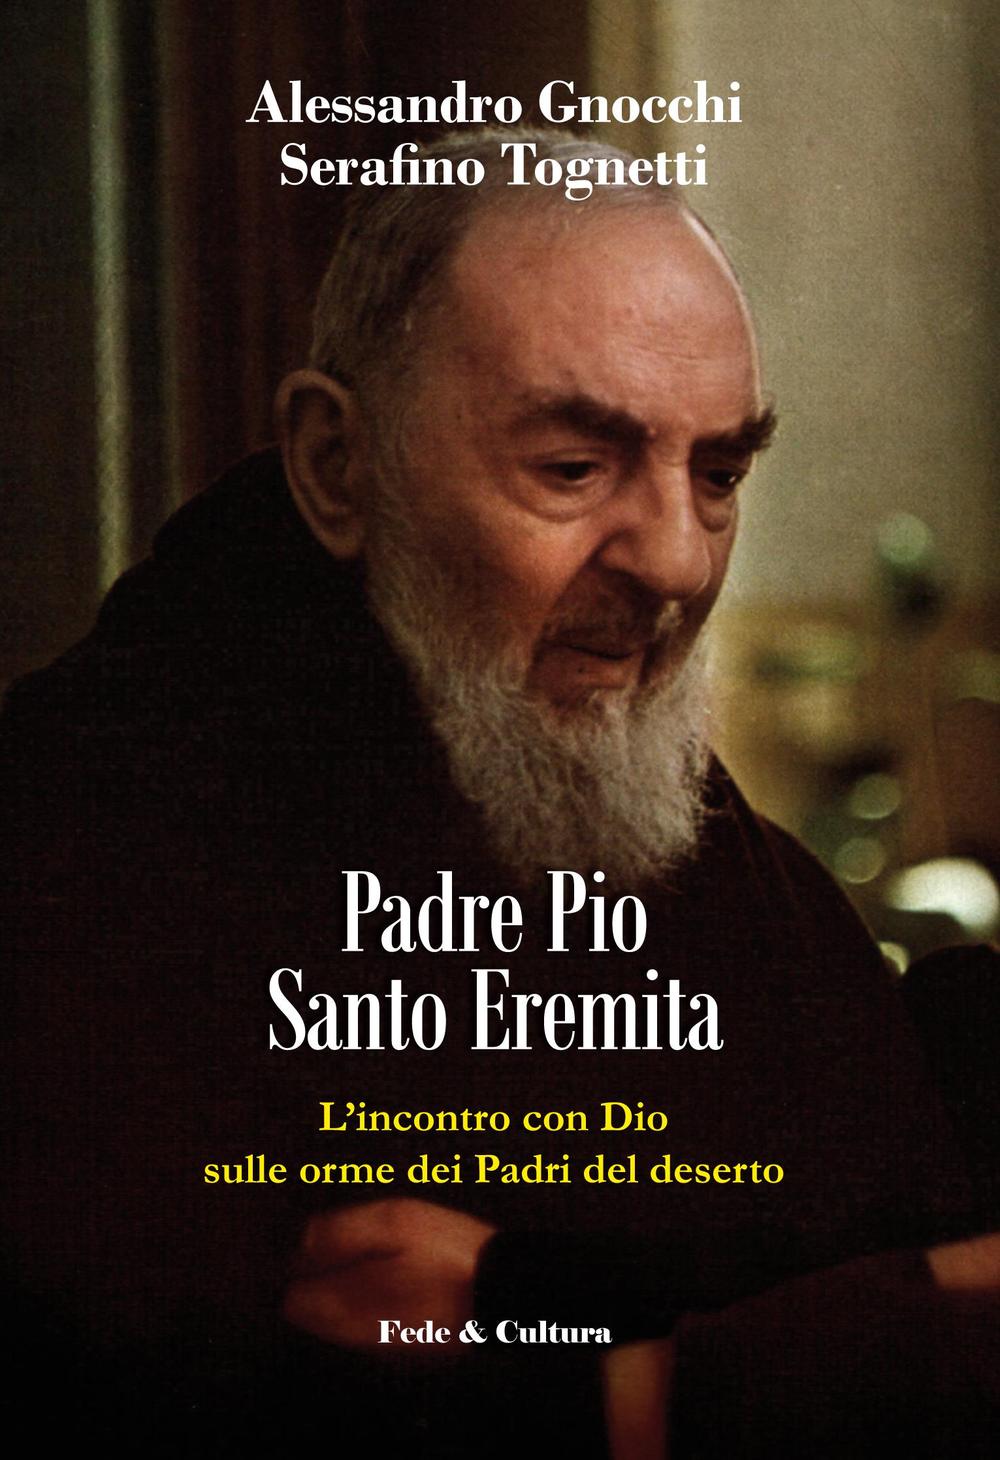 Padre Pio santo eremita. L'incontro con Dio sulle orme dei Padri del deserto